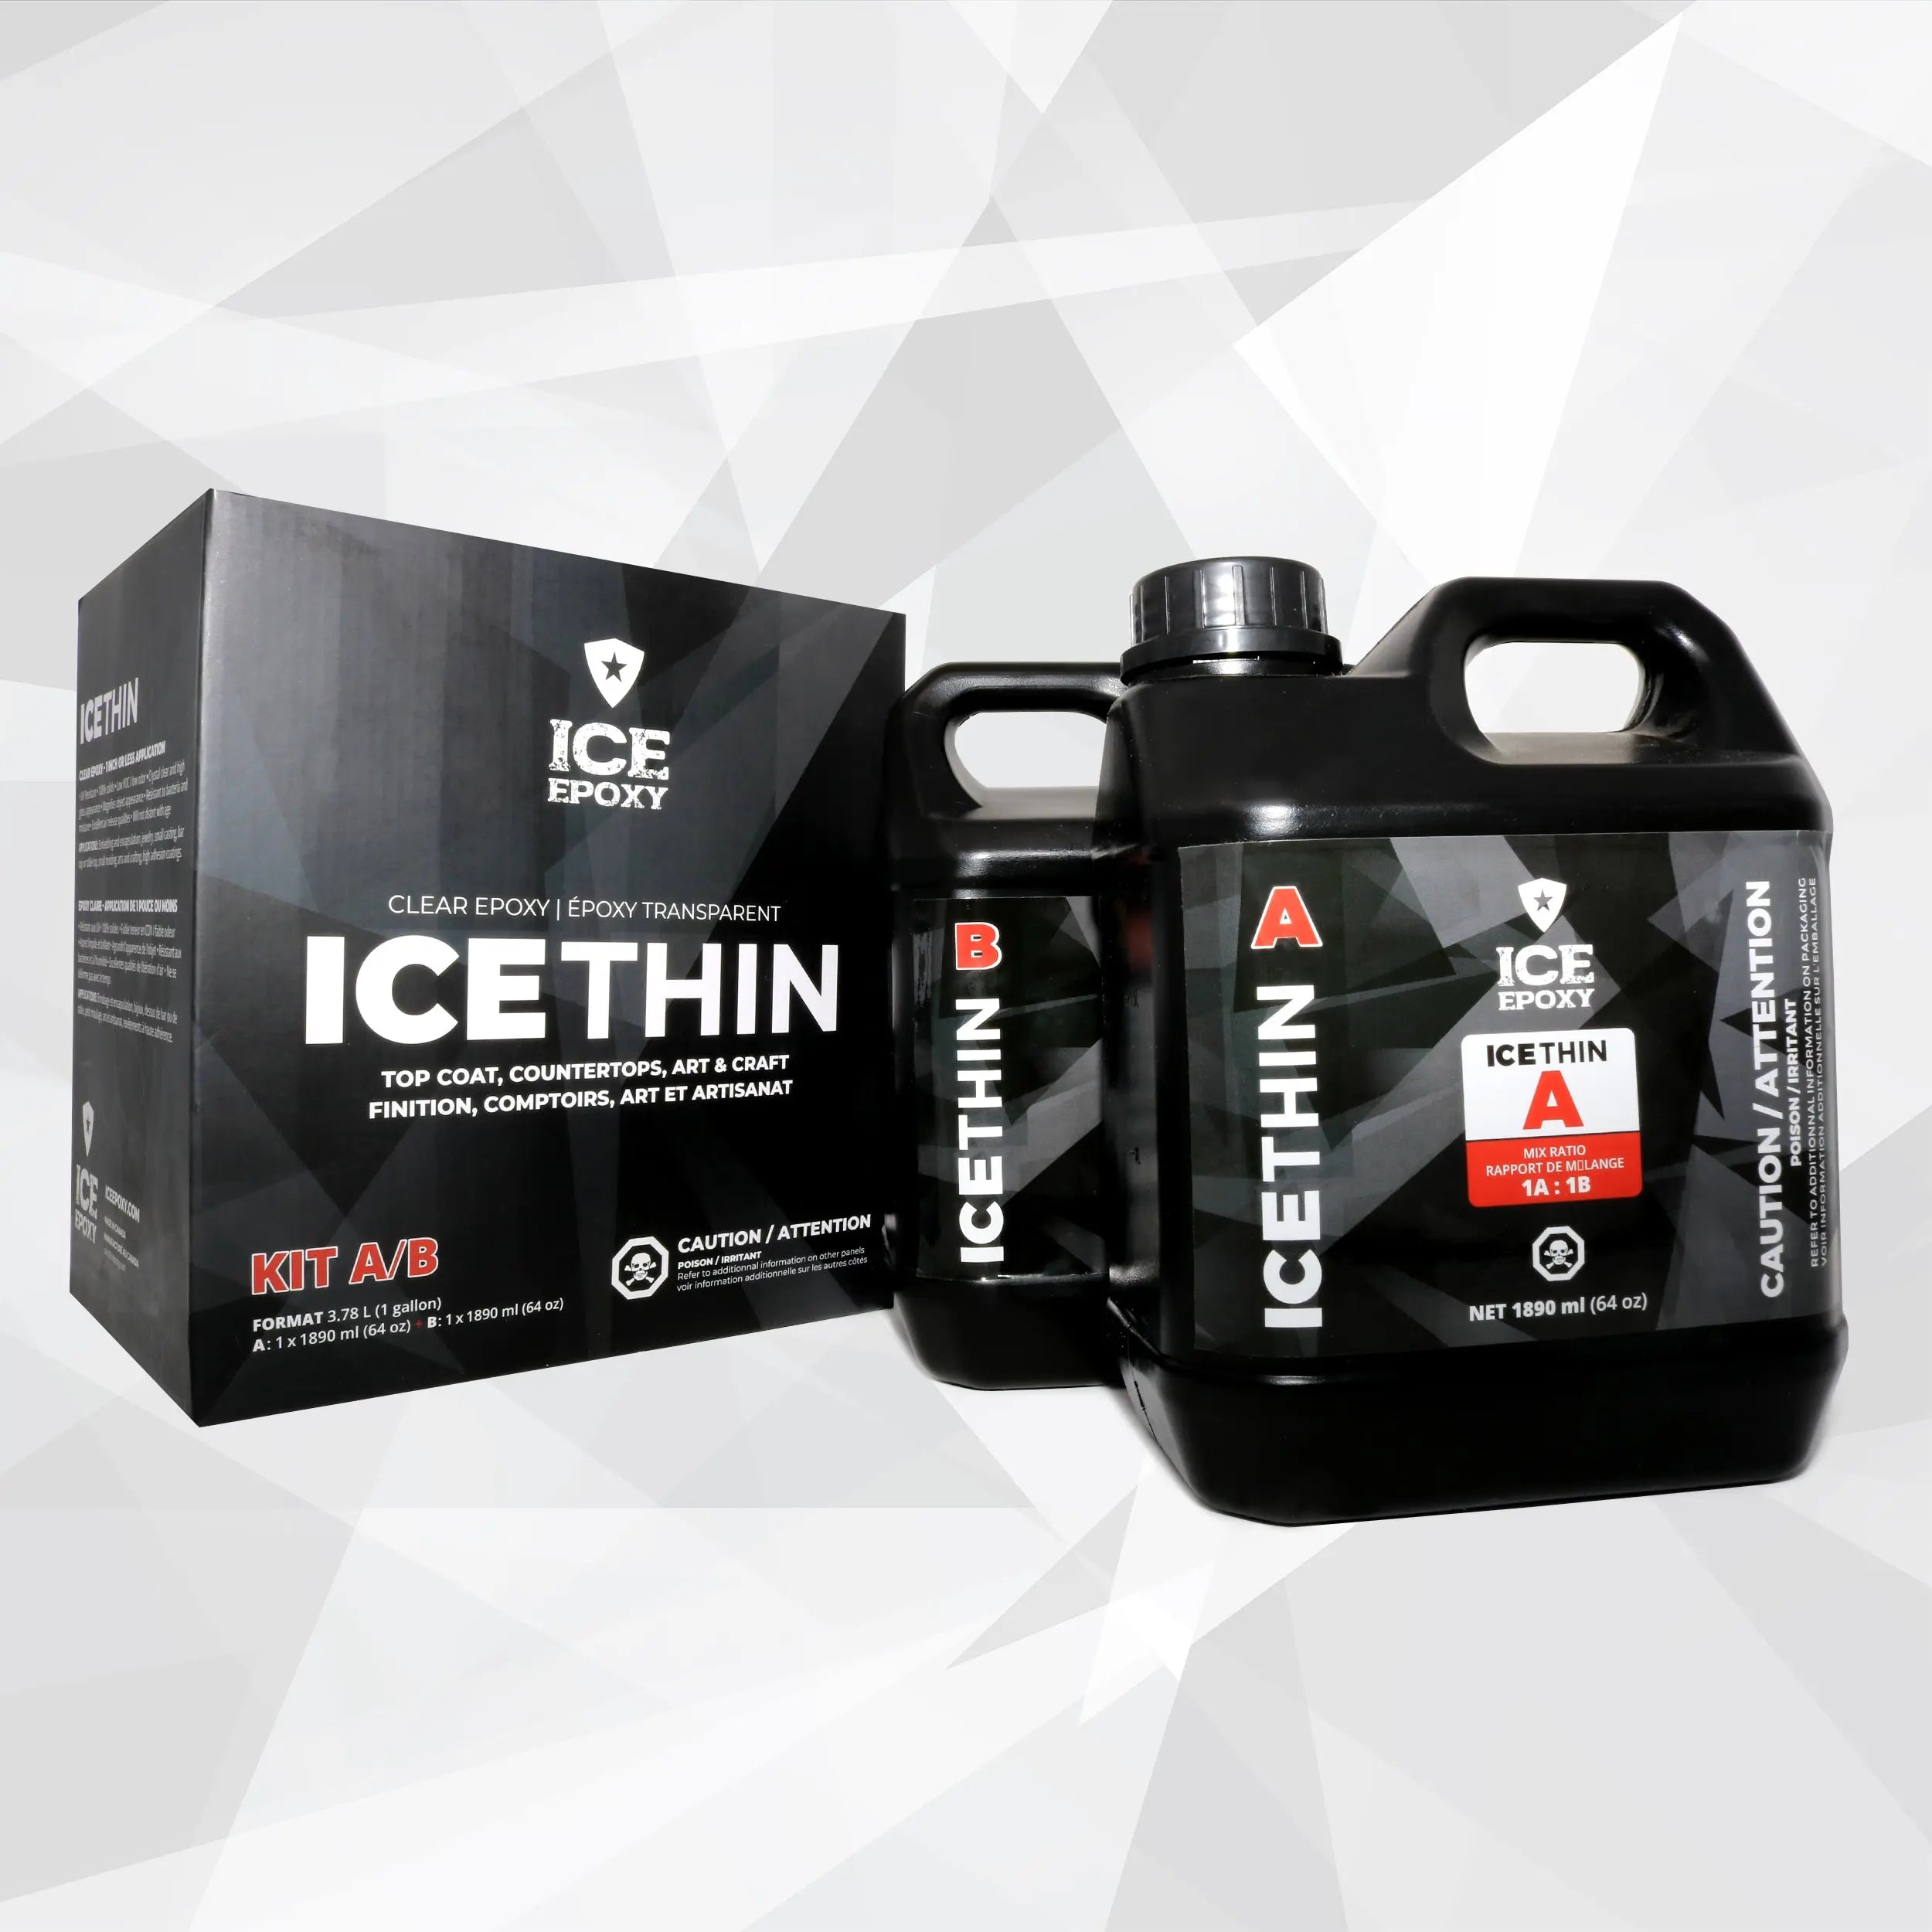 IceThin - Resina epoxi transparente 1:1, brillo de alto brillo, el mejor  kit de resina para artistas, ideal para fundición y moldeo transparente